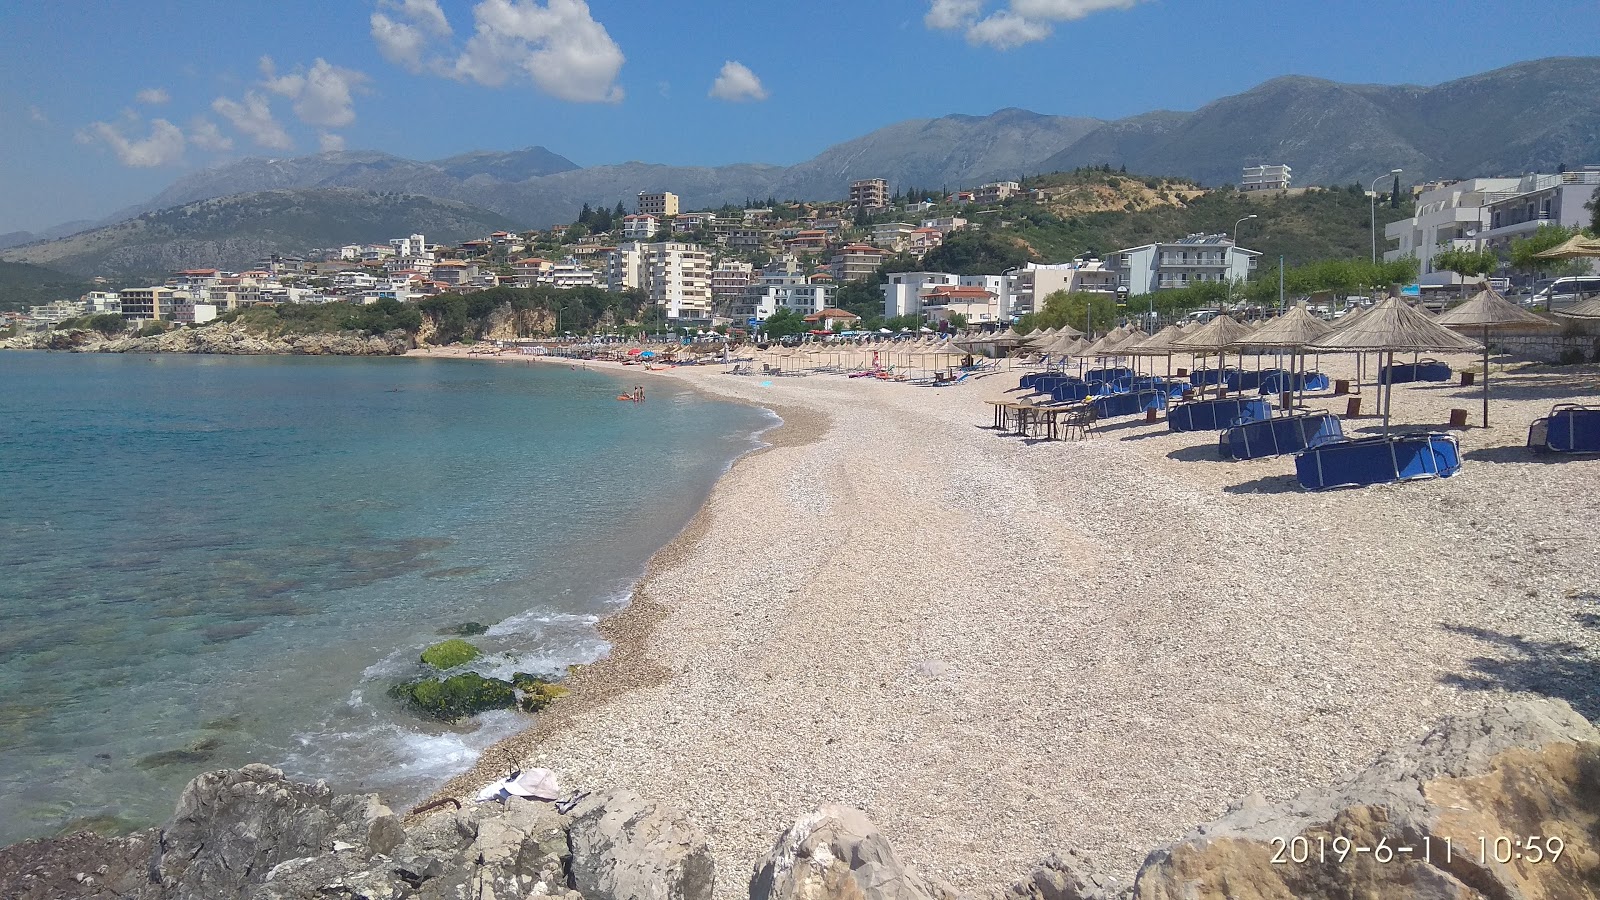 Photo of Prinos beach with spacious bay